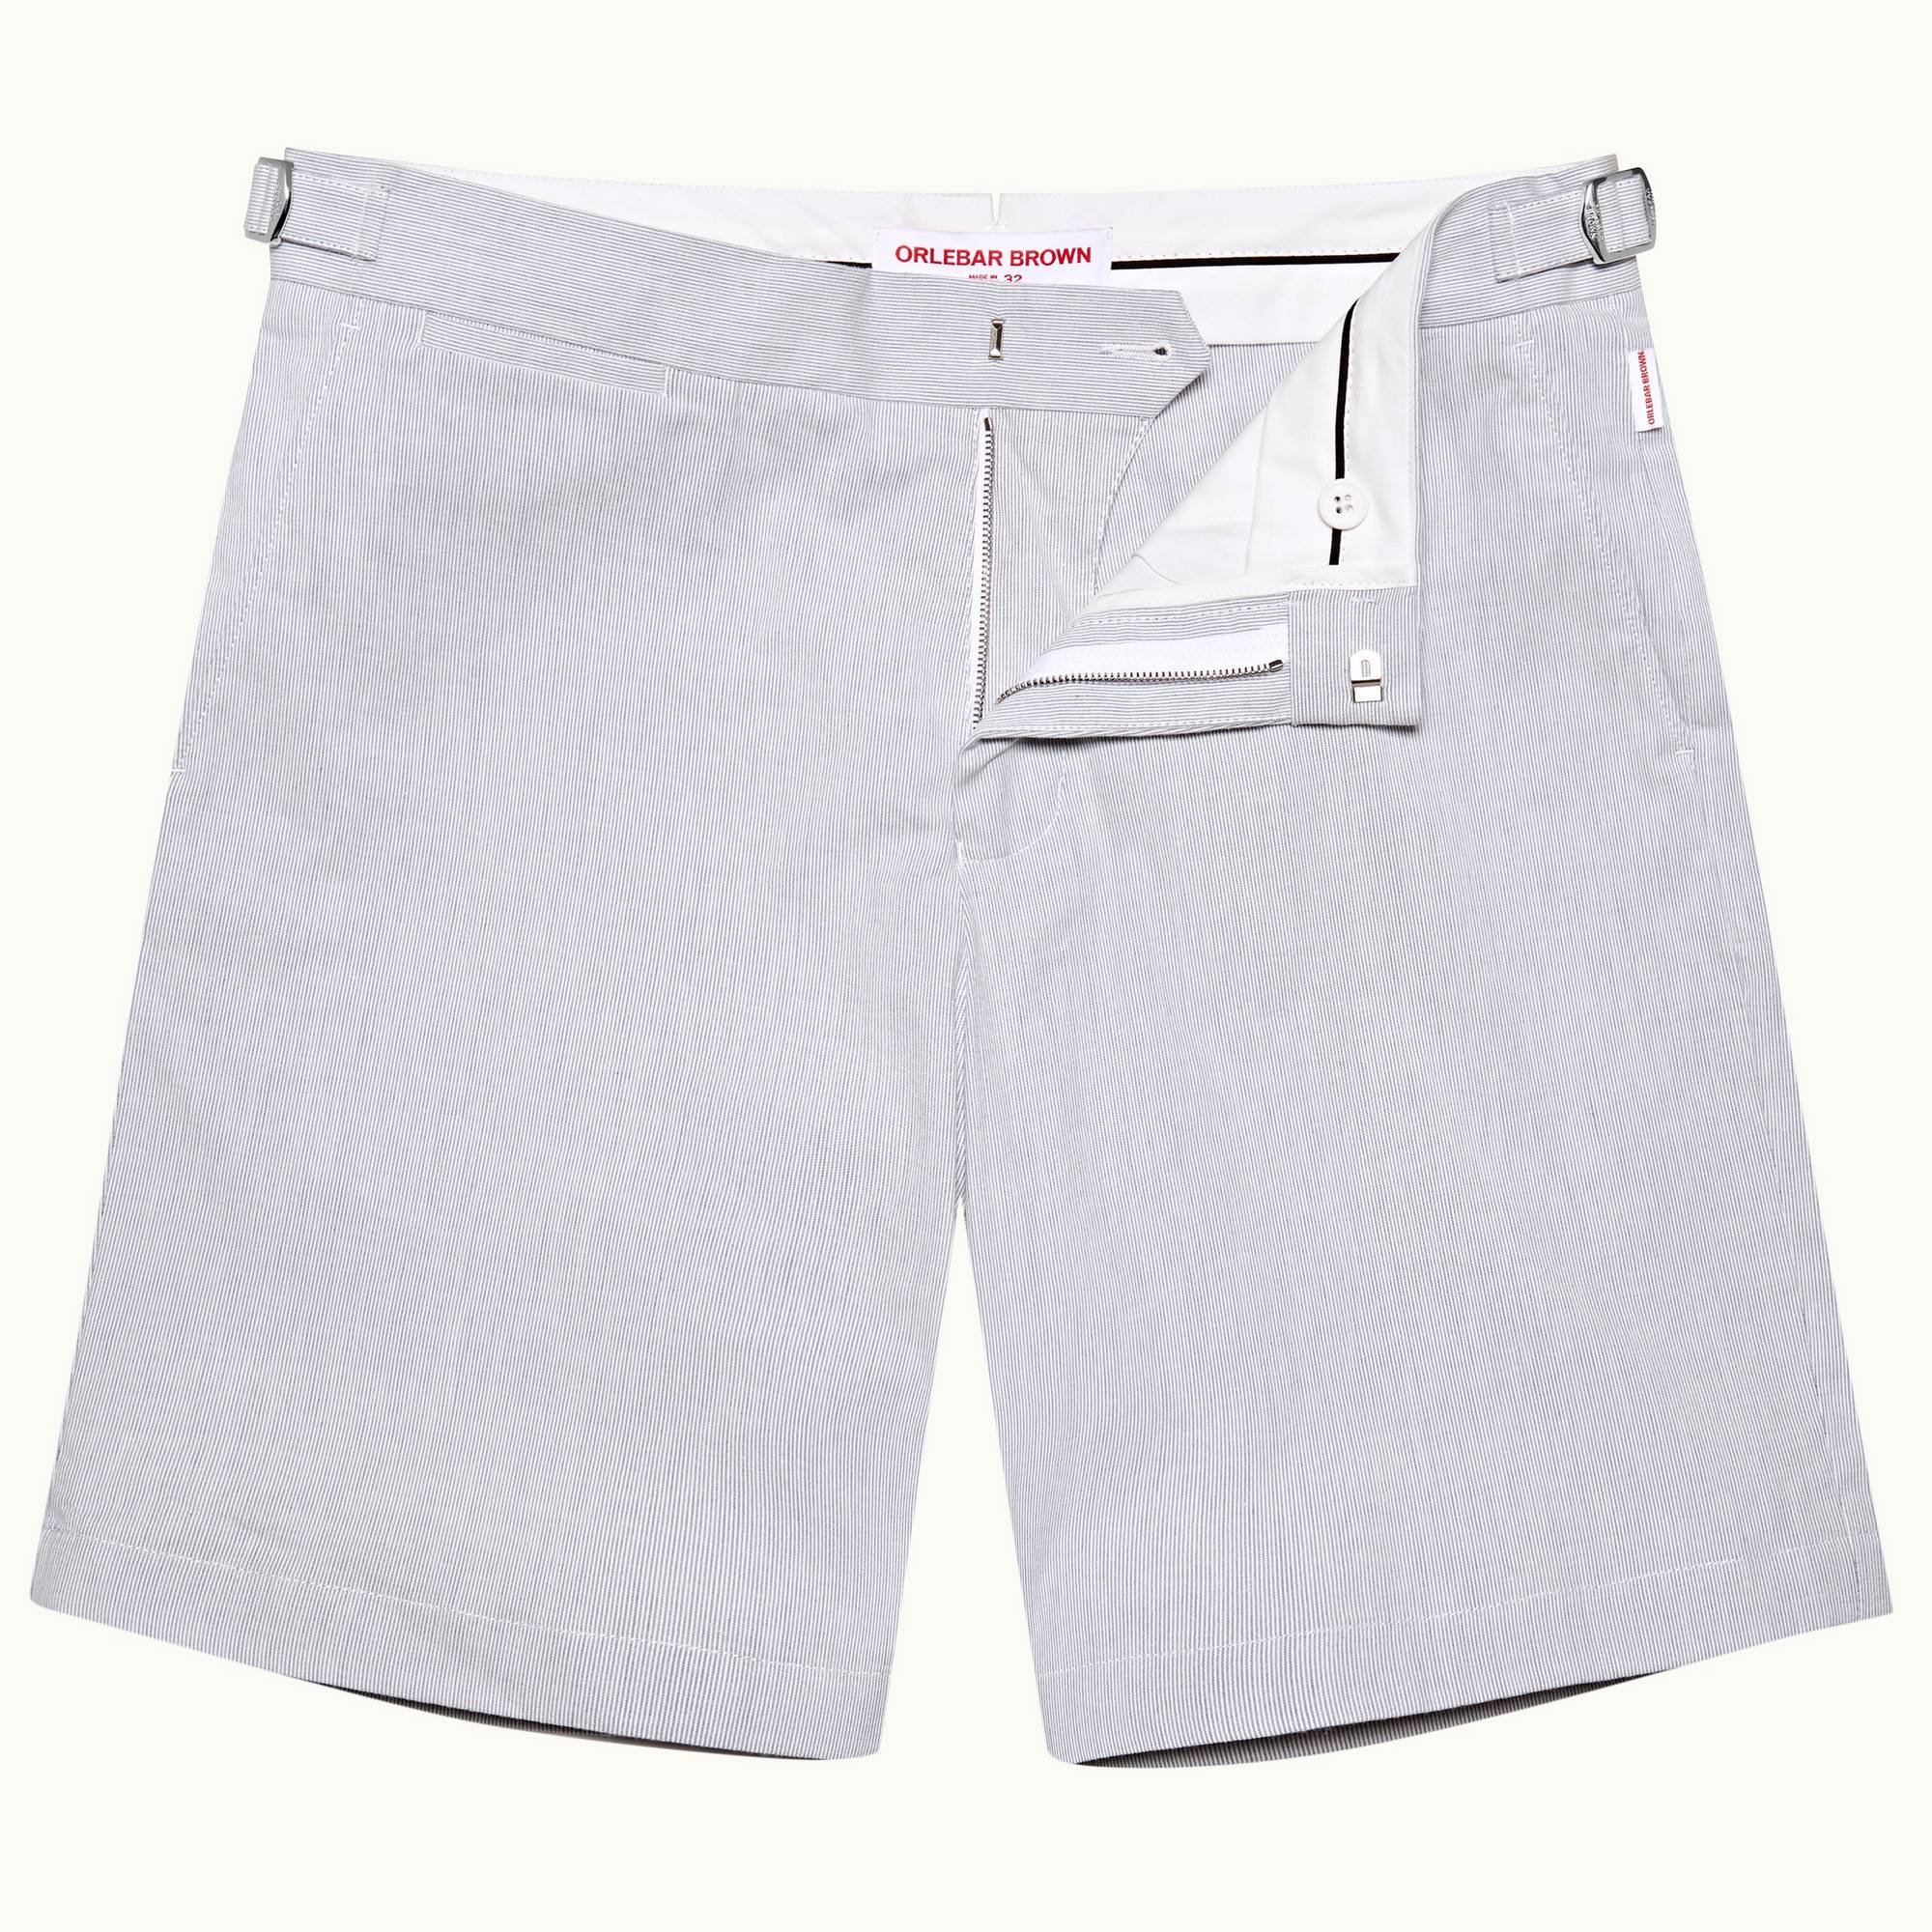 Norwich Seersucker - Mens Midnight Navy/White Tailored Fit Cotton Seersucker Shorts